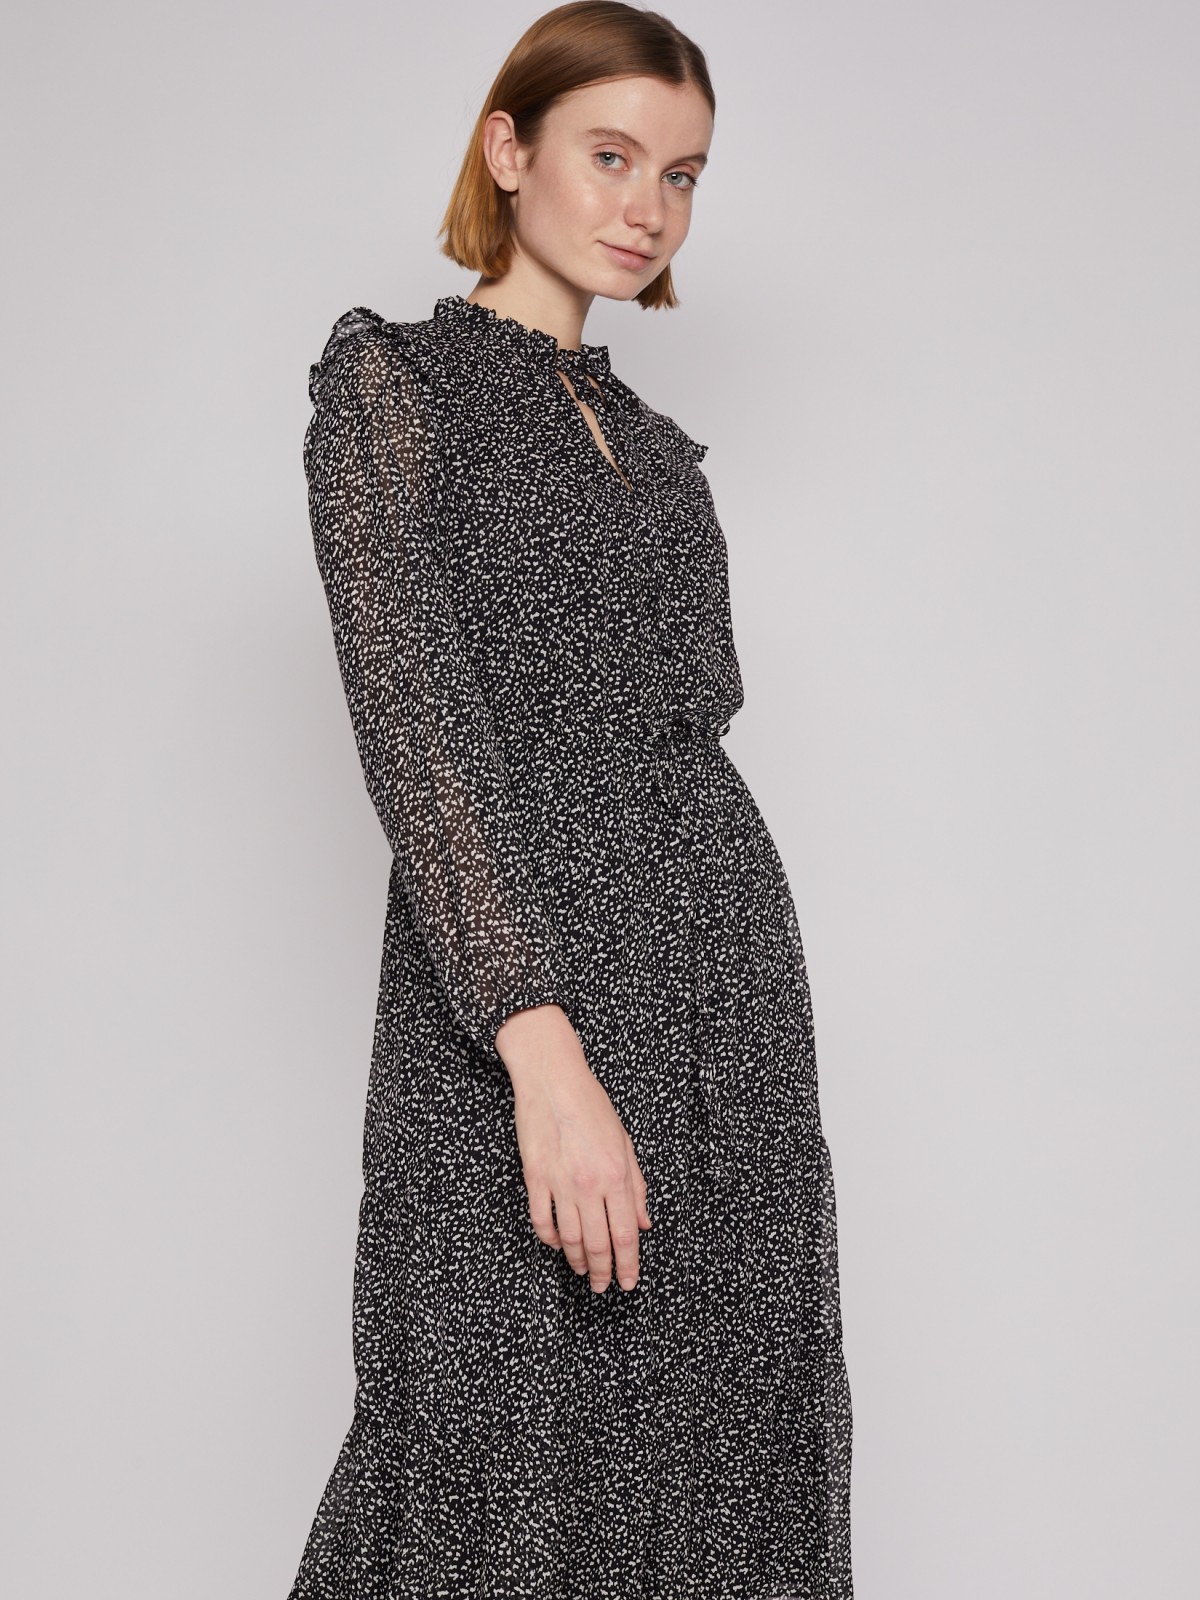 Шифоновое платье миди с длинным рукавом zolla 02213824Y133, цвет черный, размер XS - фото 3